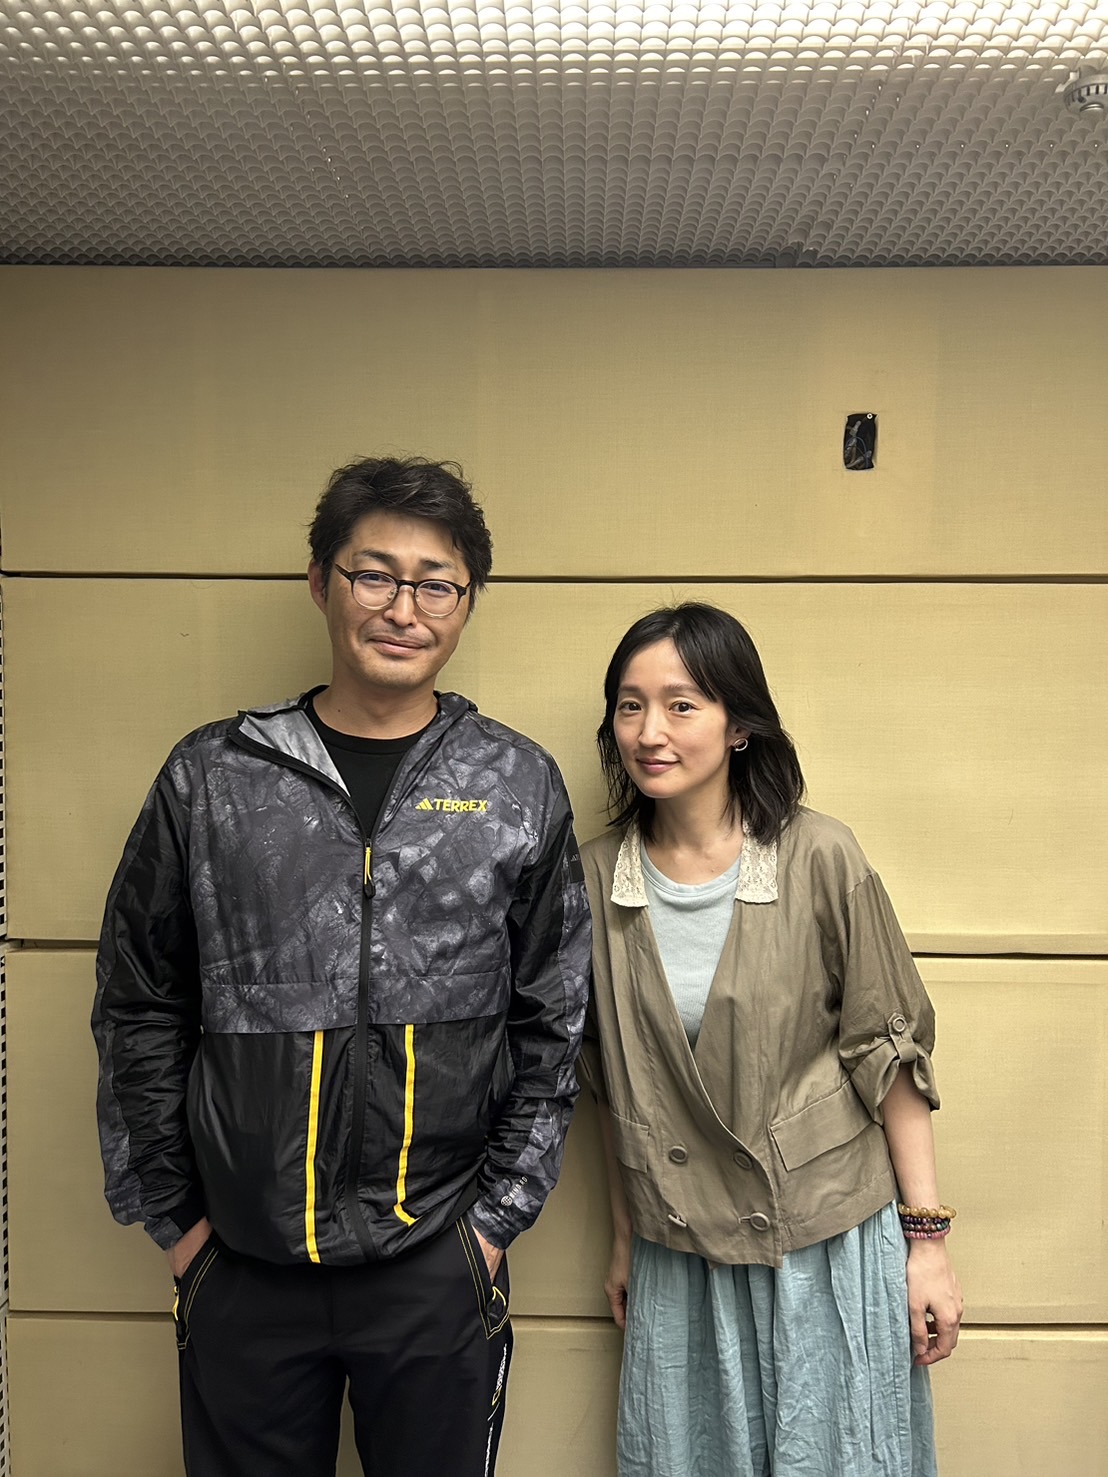 俳優 安田顕さんと、シンガーソングライター 安藤裕子さんの会話を盗み聞き・・・お互いの印象は「不思議な人だなぁ…」